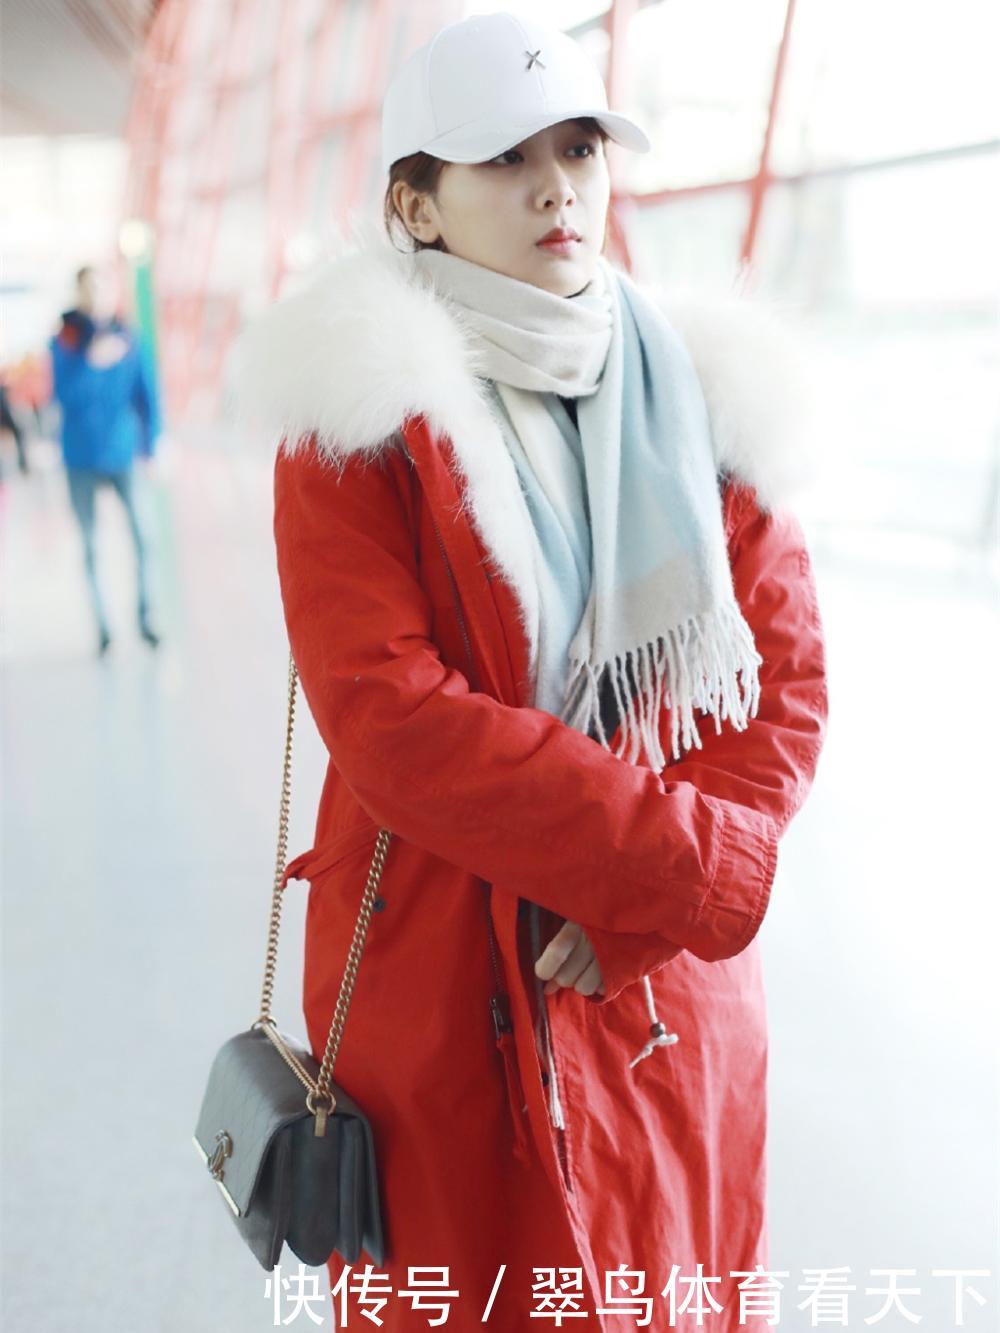 杨紫和鞠婧祎, 同穿红色棉服现身机场, 风格差距